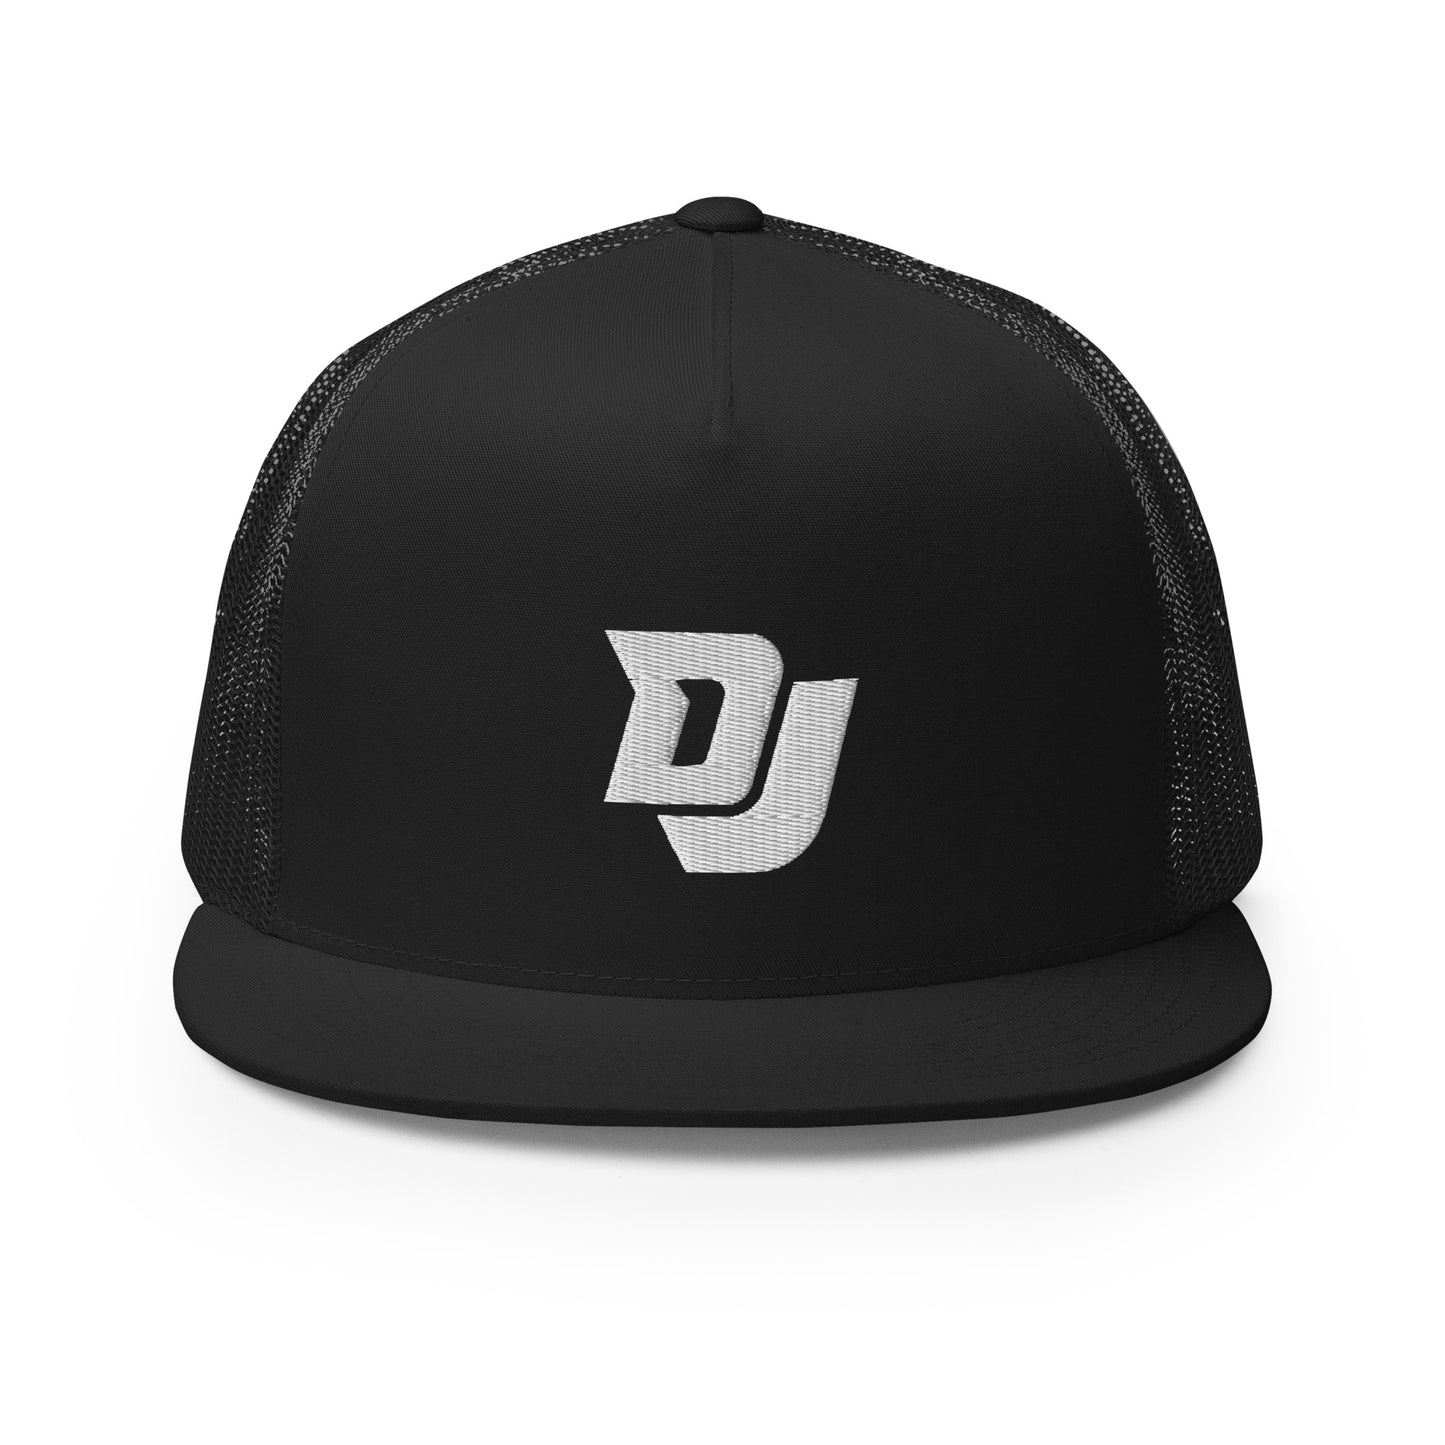 Delonte Jones "DJ" Trucker Cap